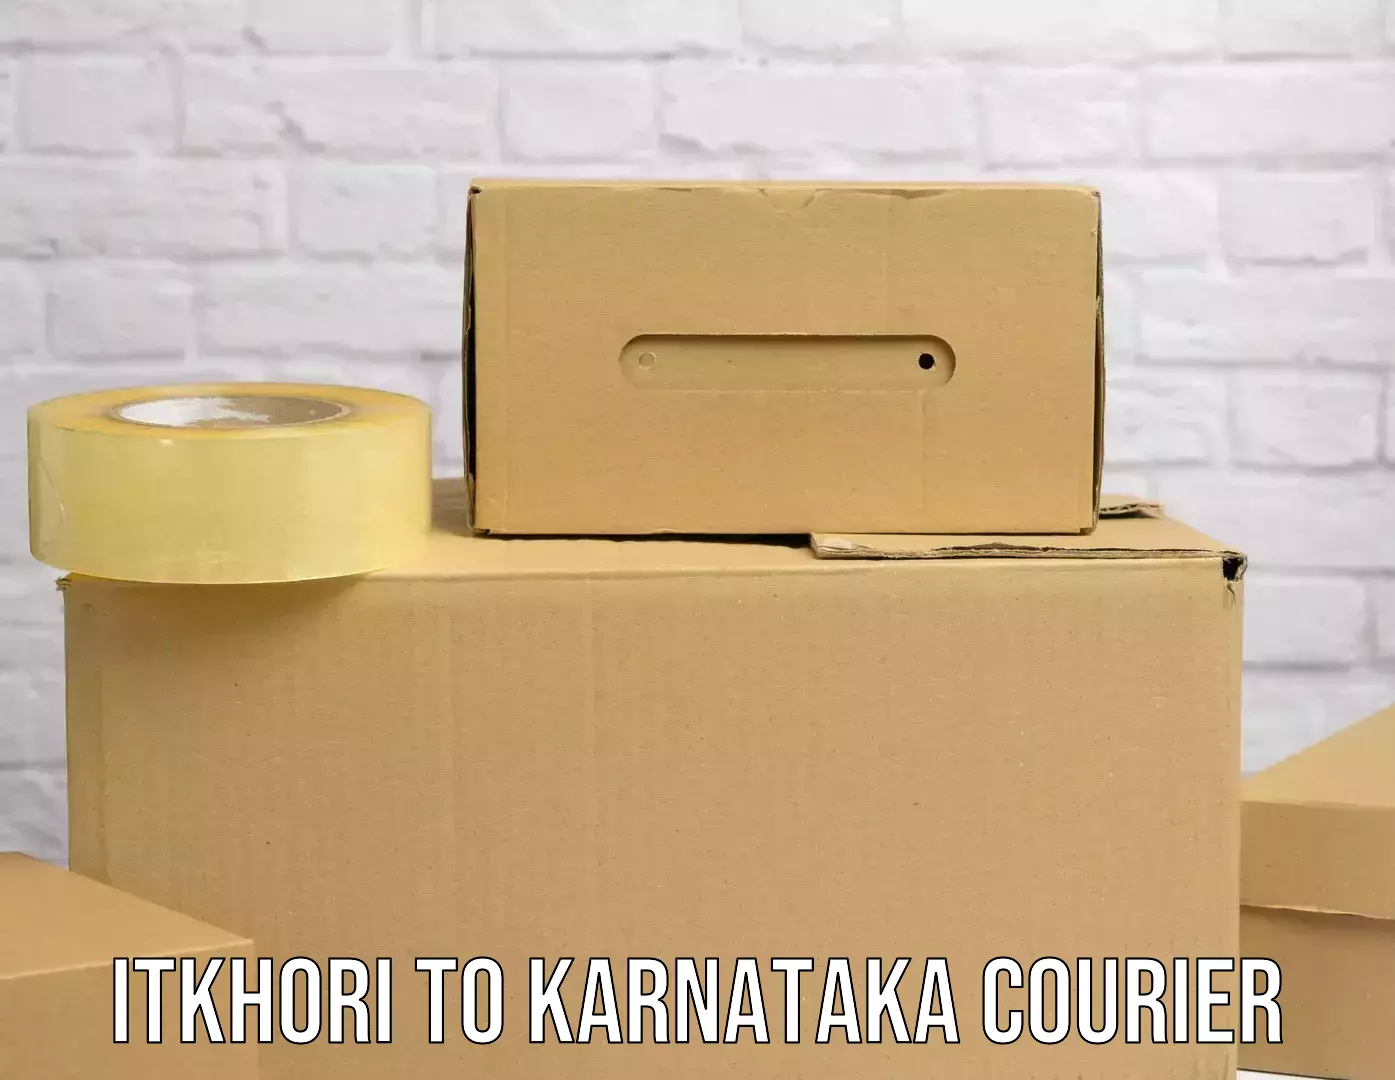 Custom courier solutions Itkhori to Karnataka